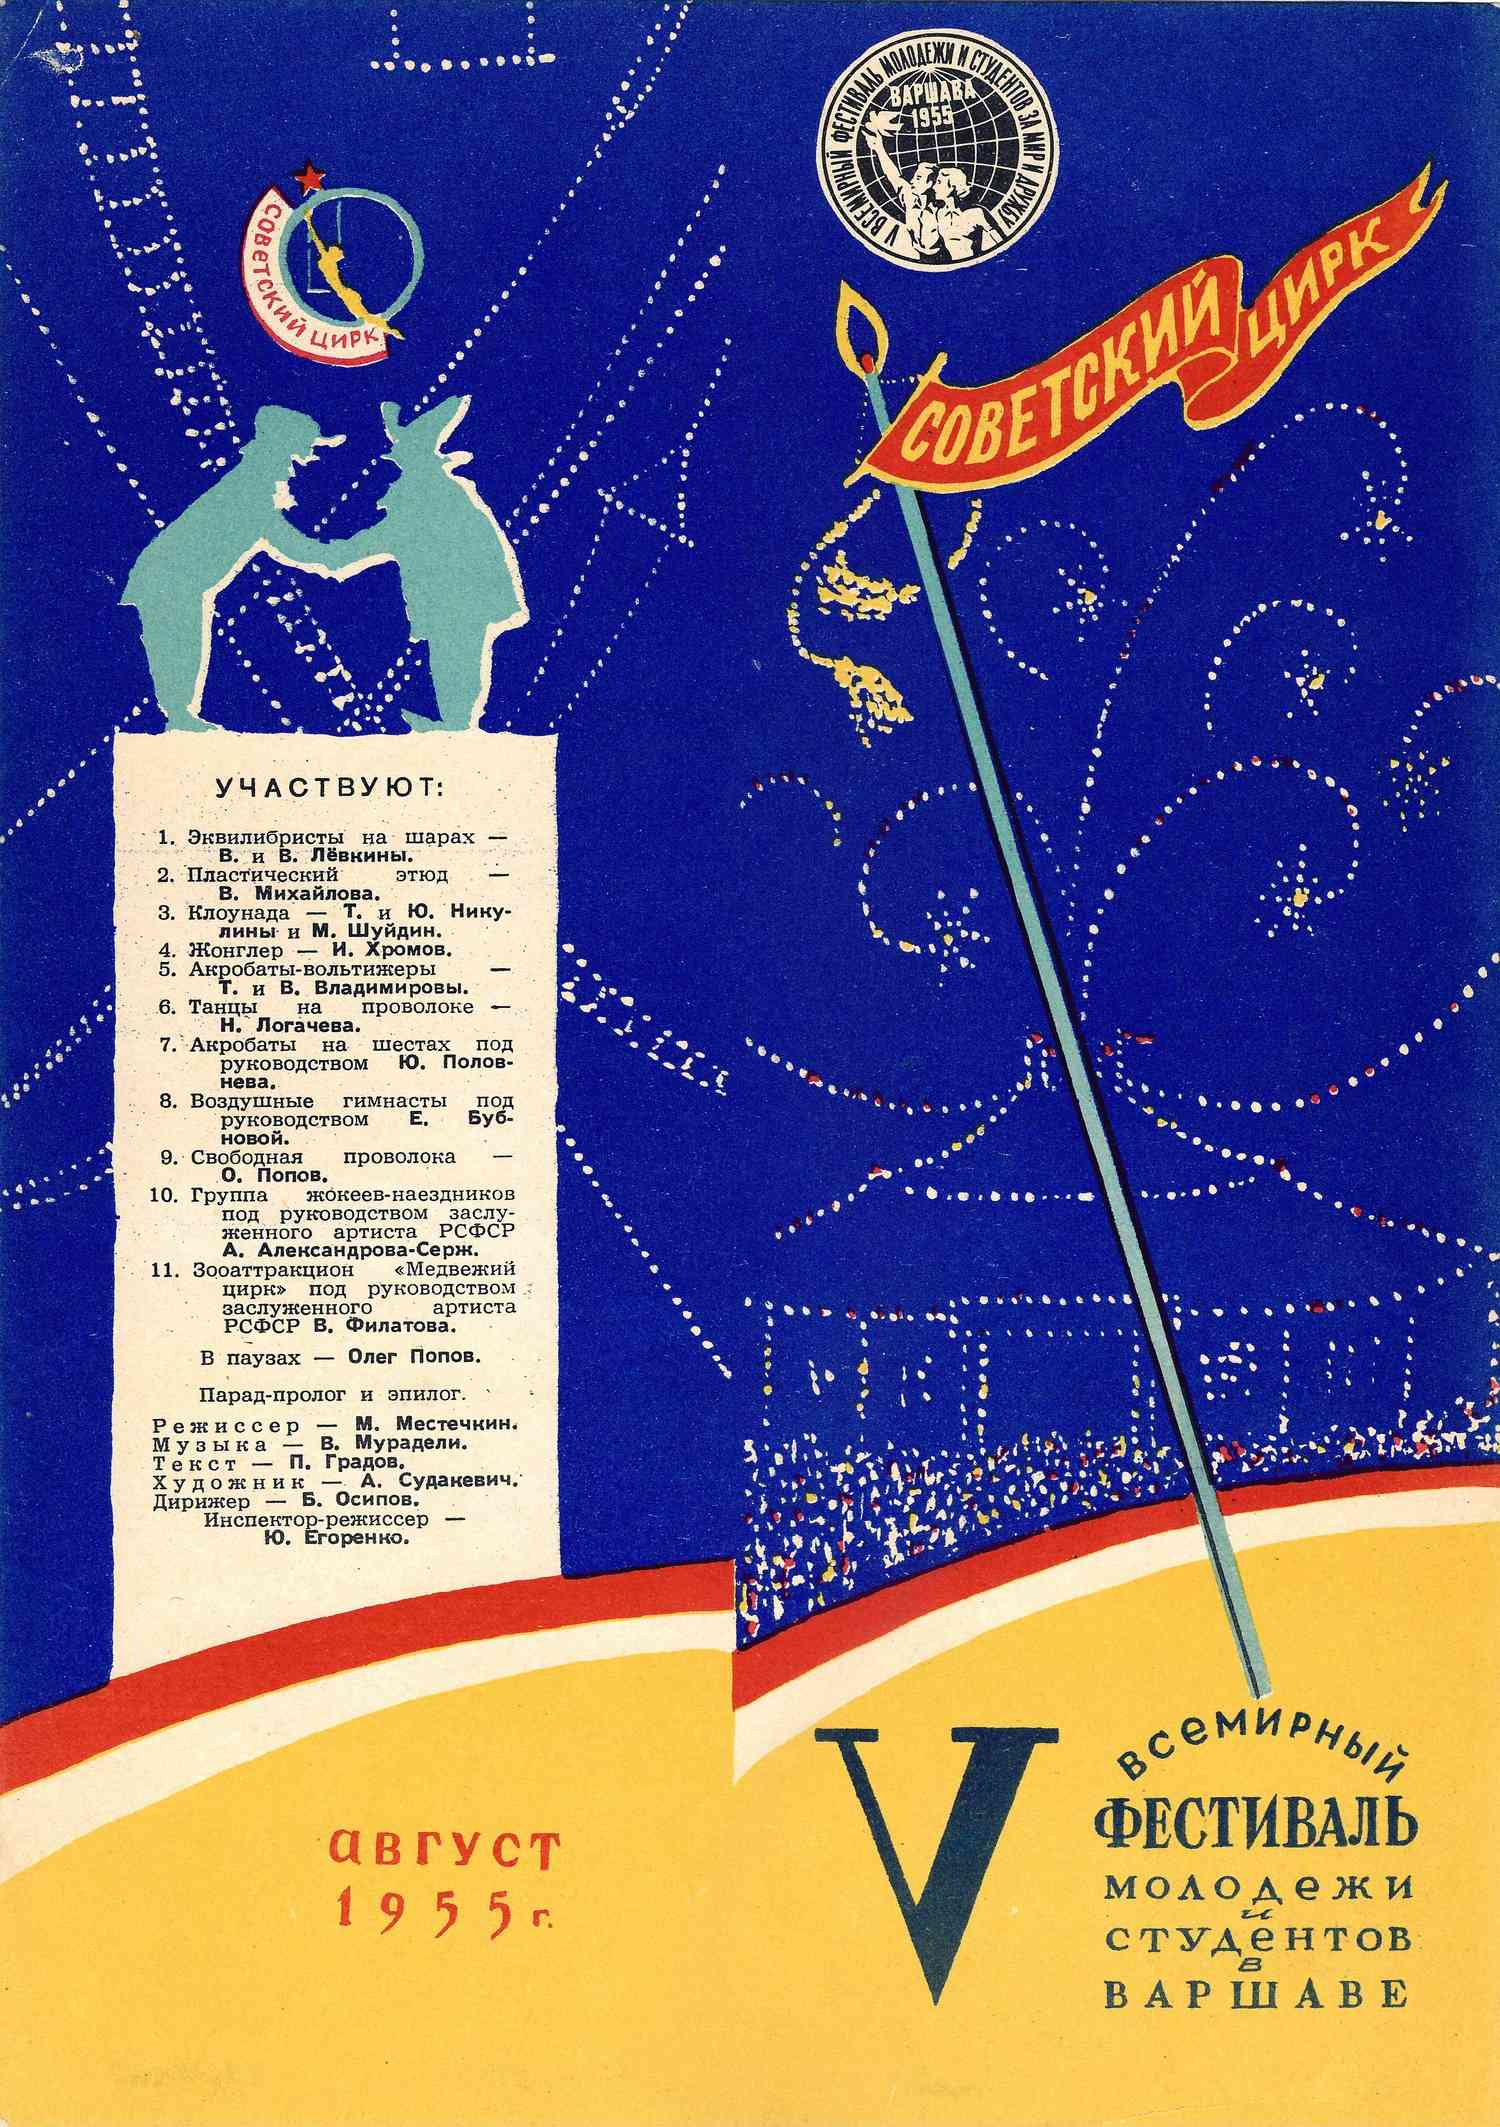 Программа выступления советского цирка на V Всемирном фестивале молодёжи и студентов в Варшаве. 1955.